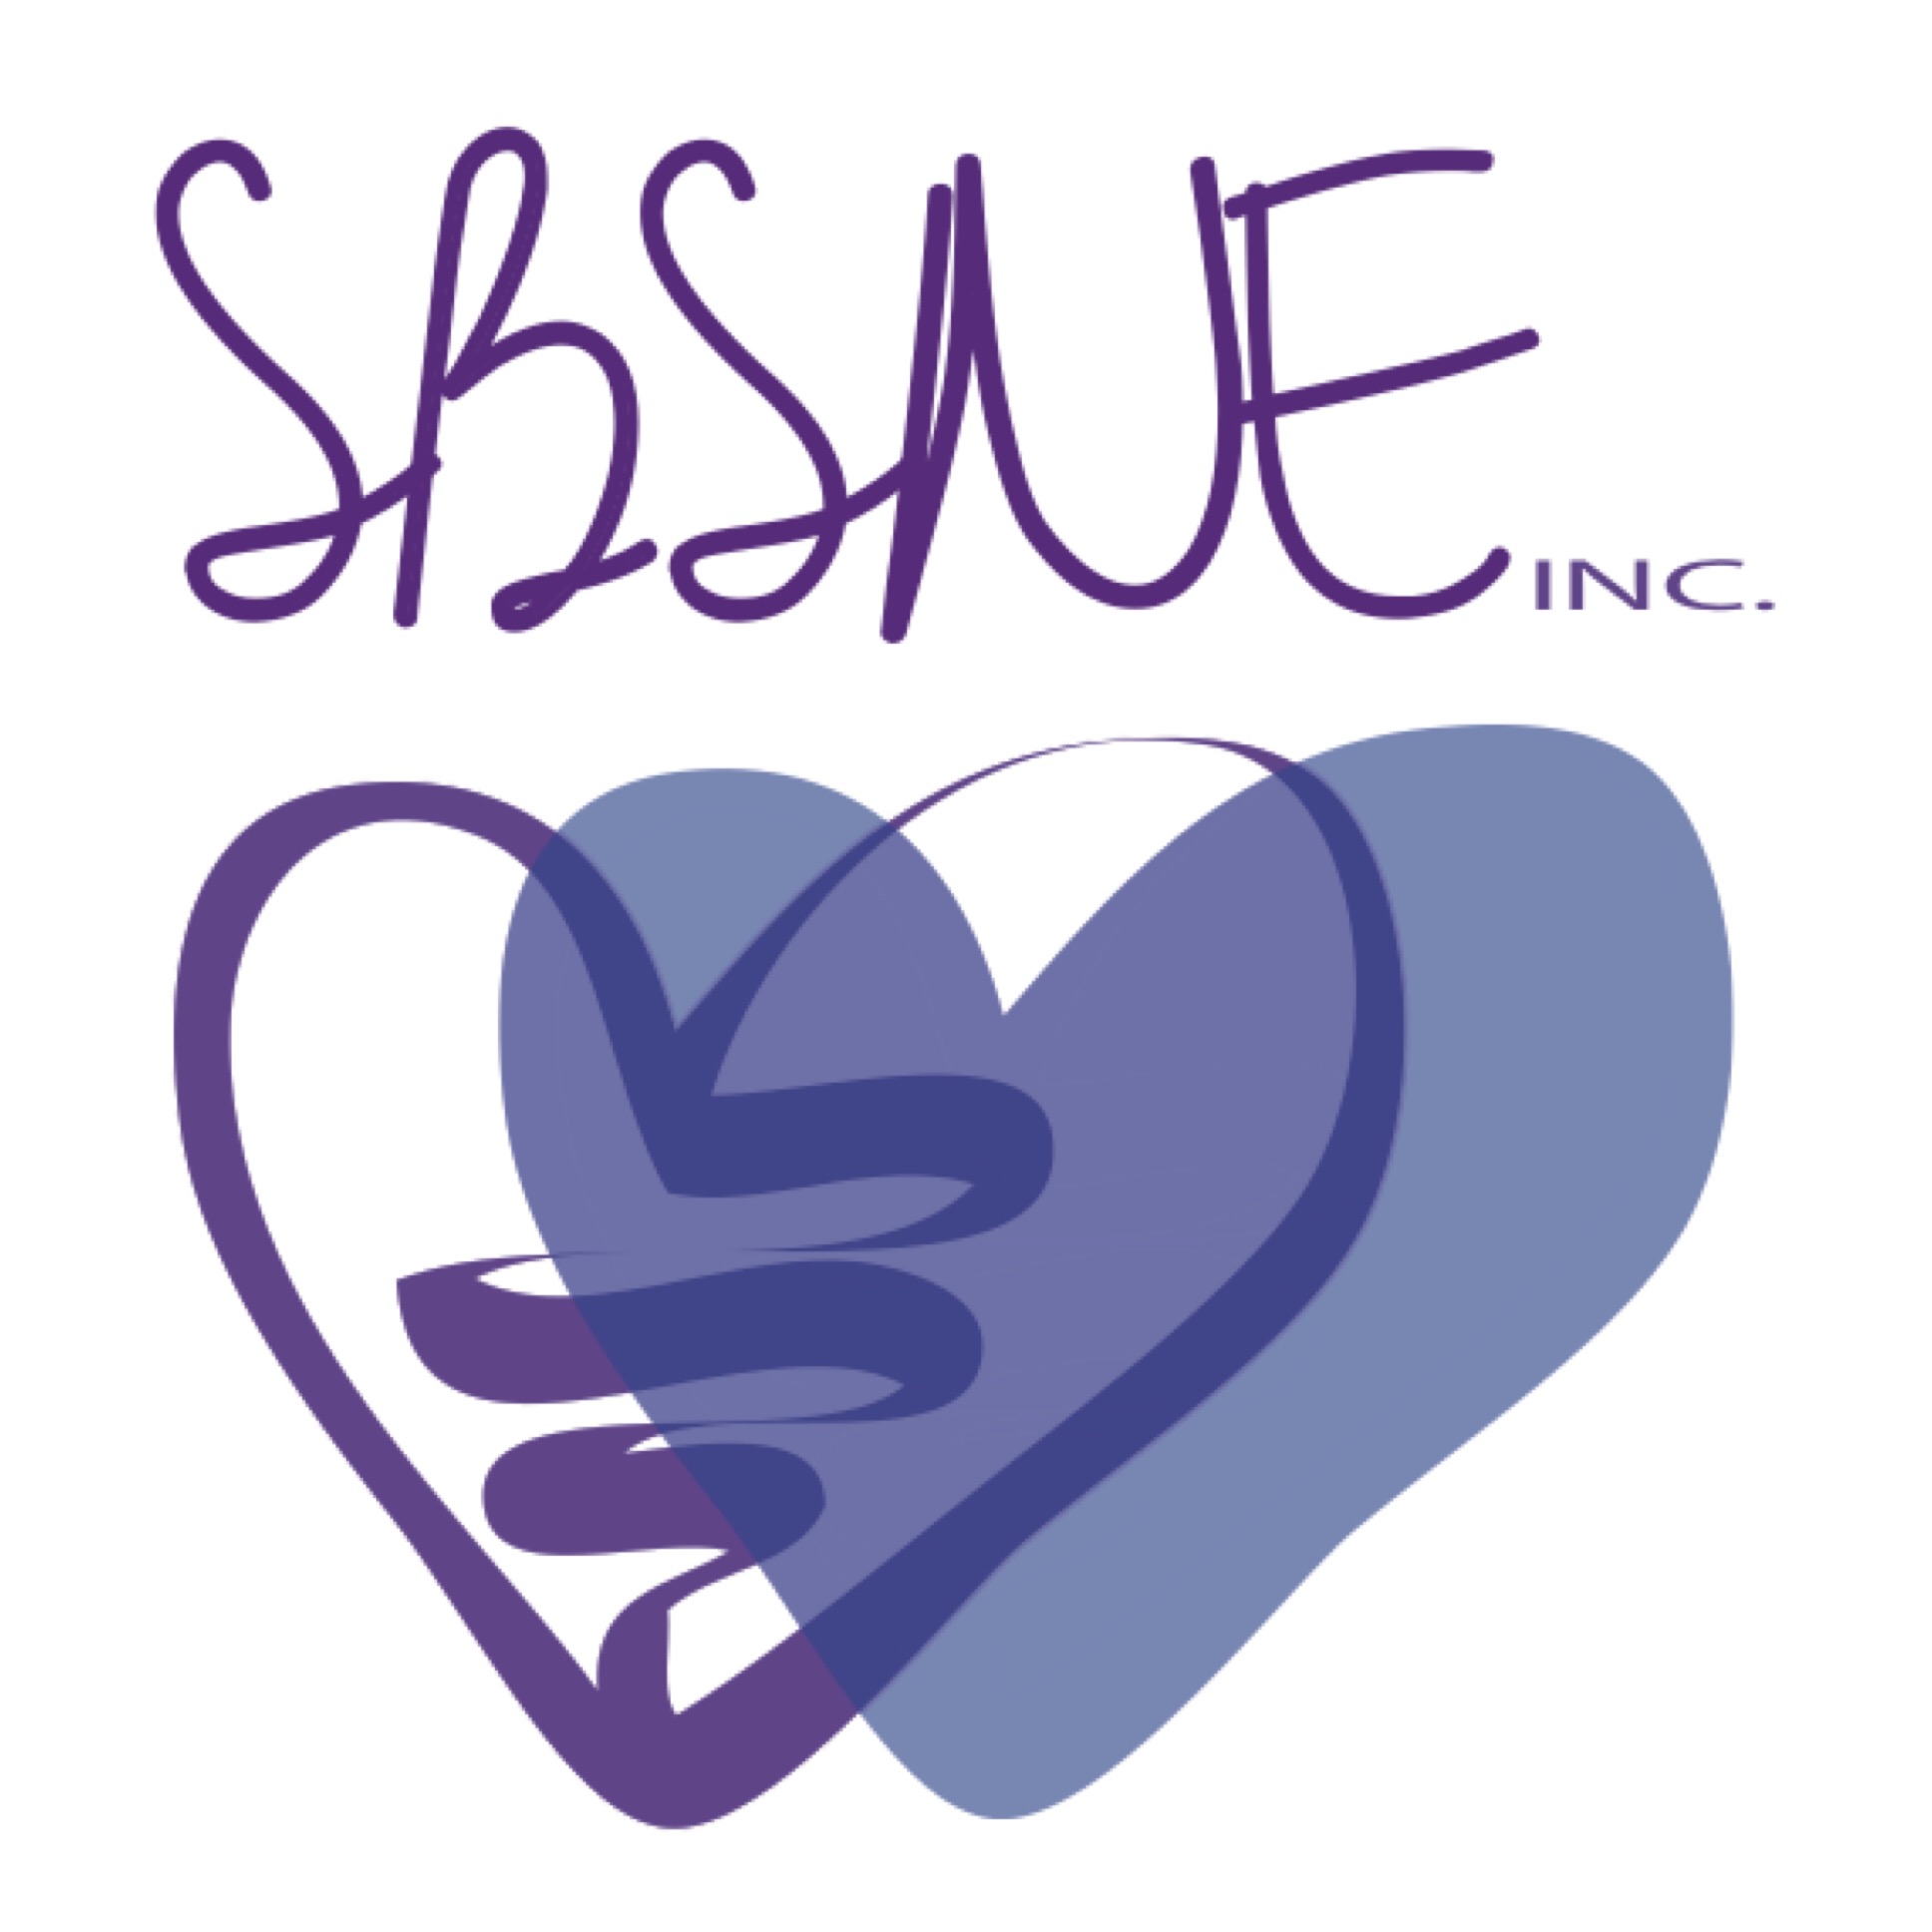 SBSNE Logo.JPG